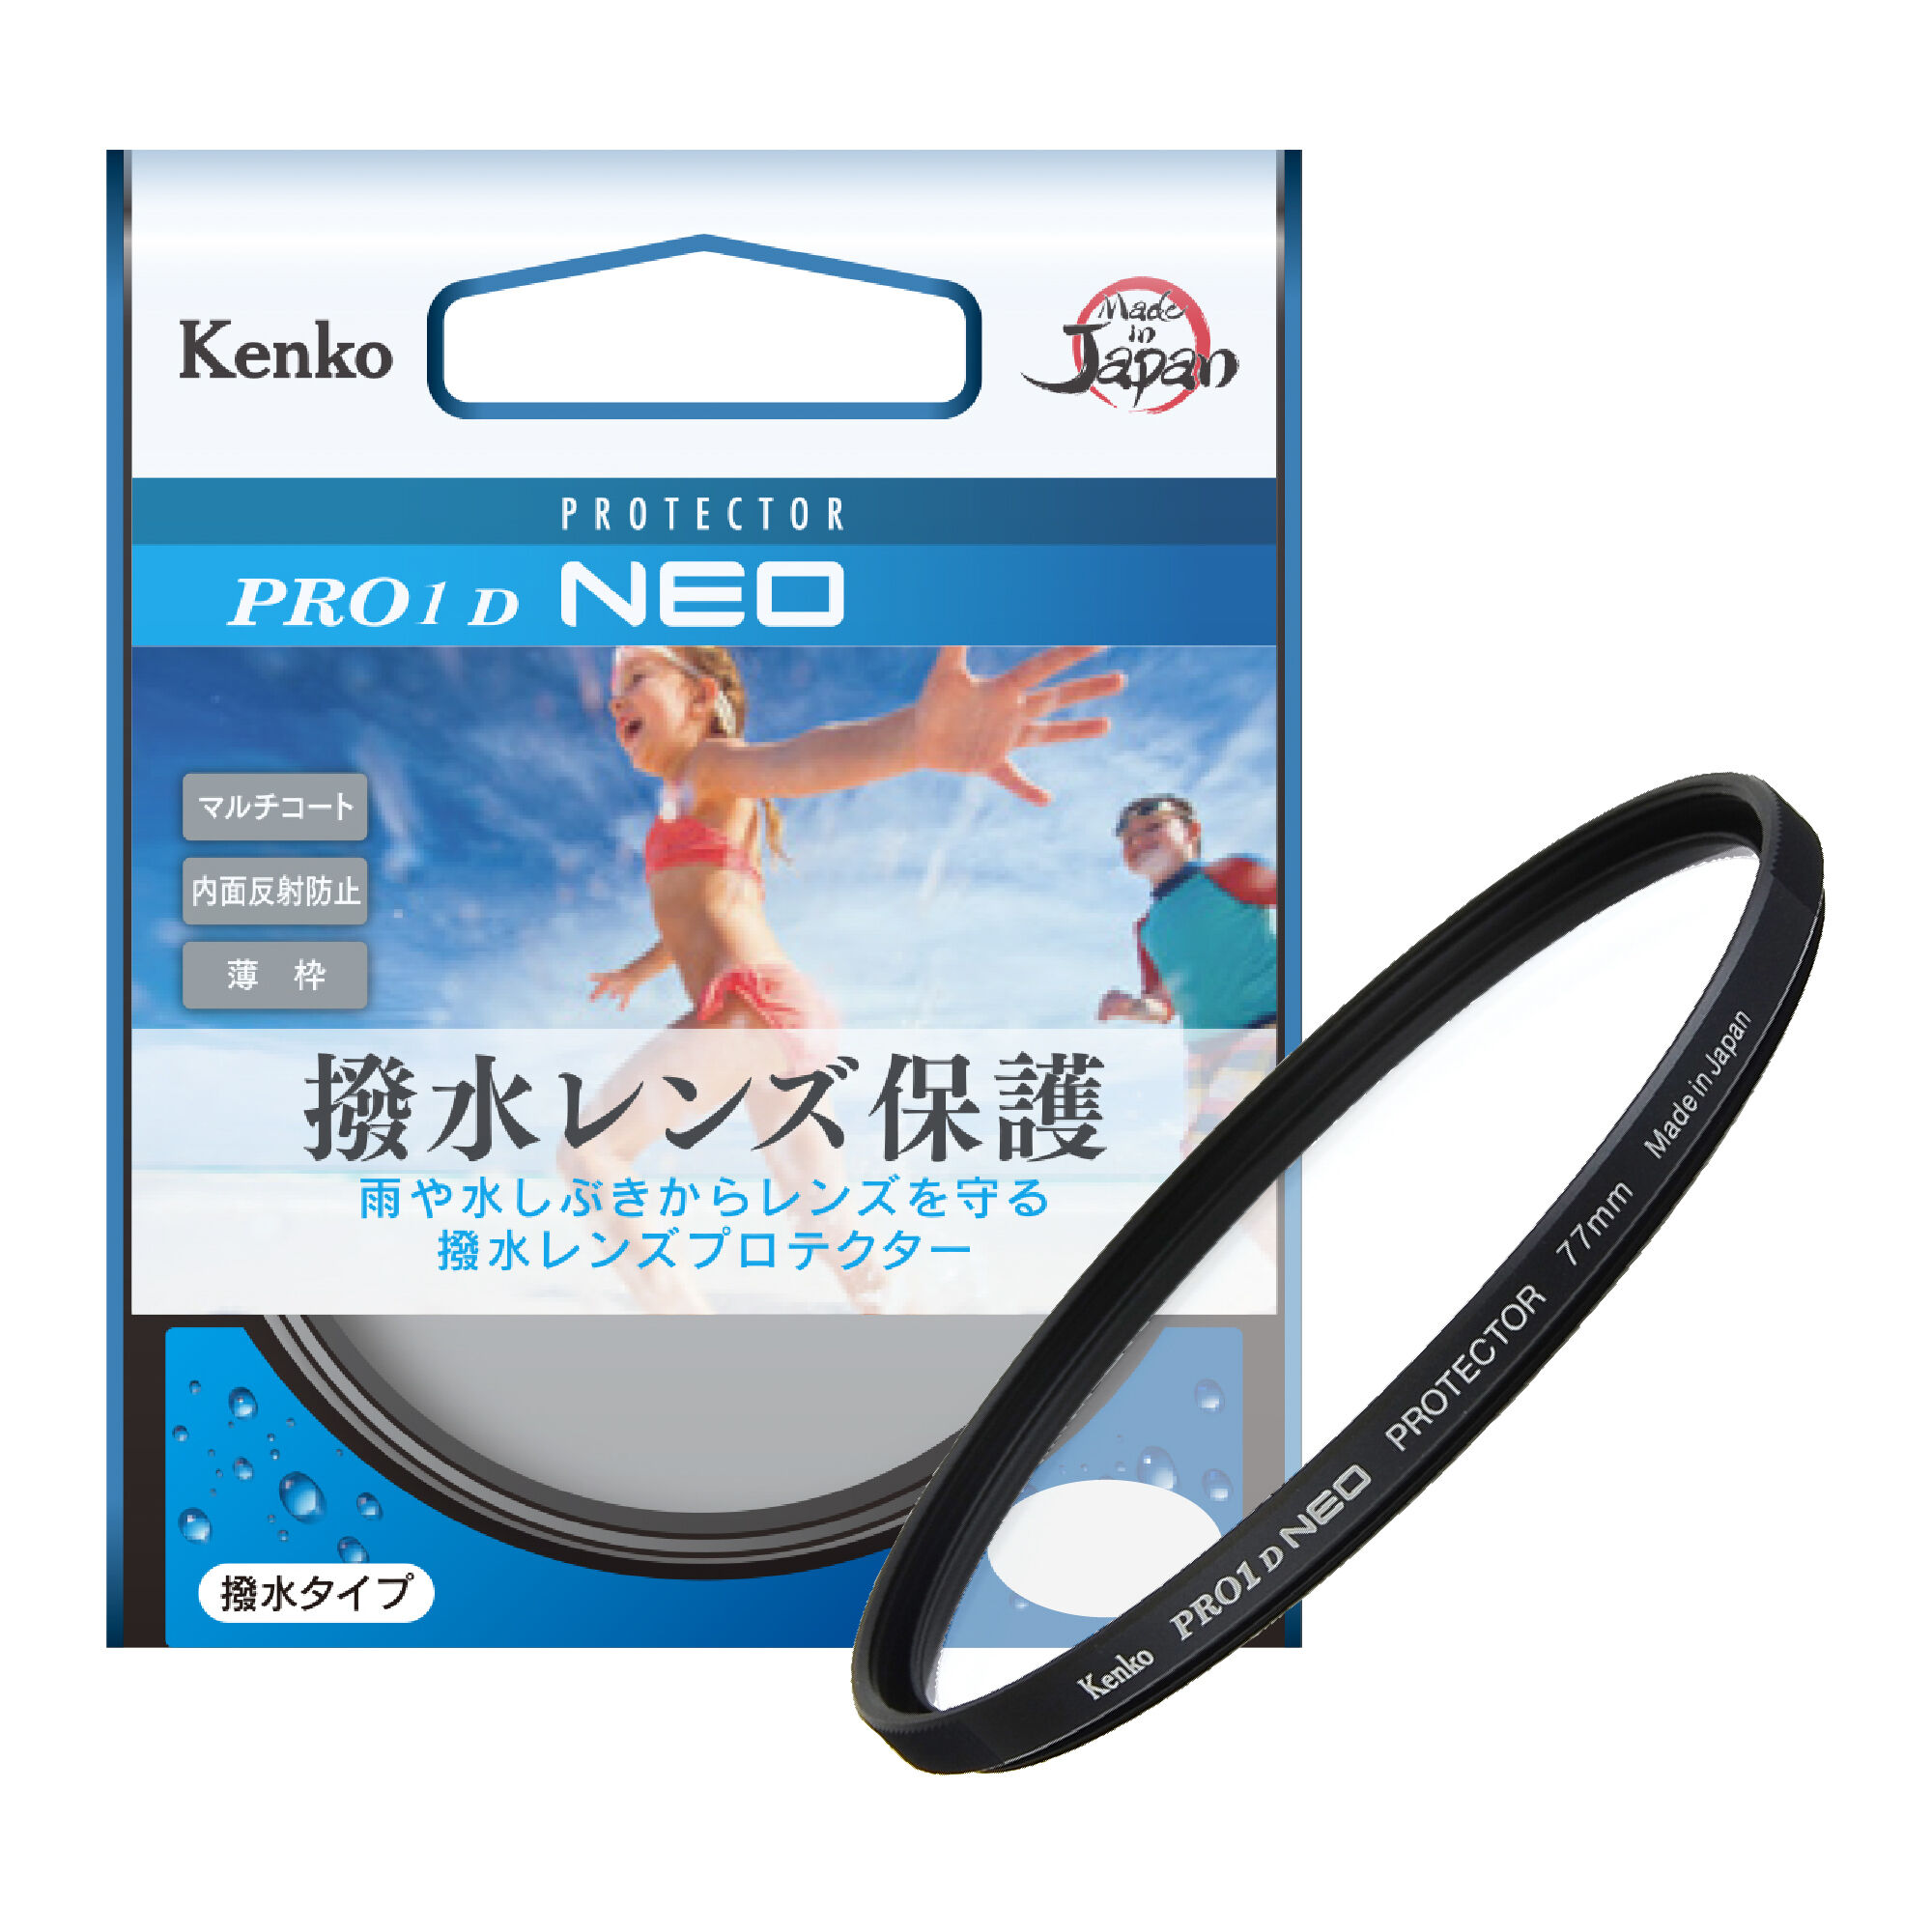 PRO1D NEO プロテクター | ケンコー・トキナー